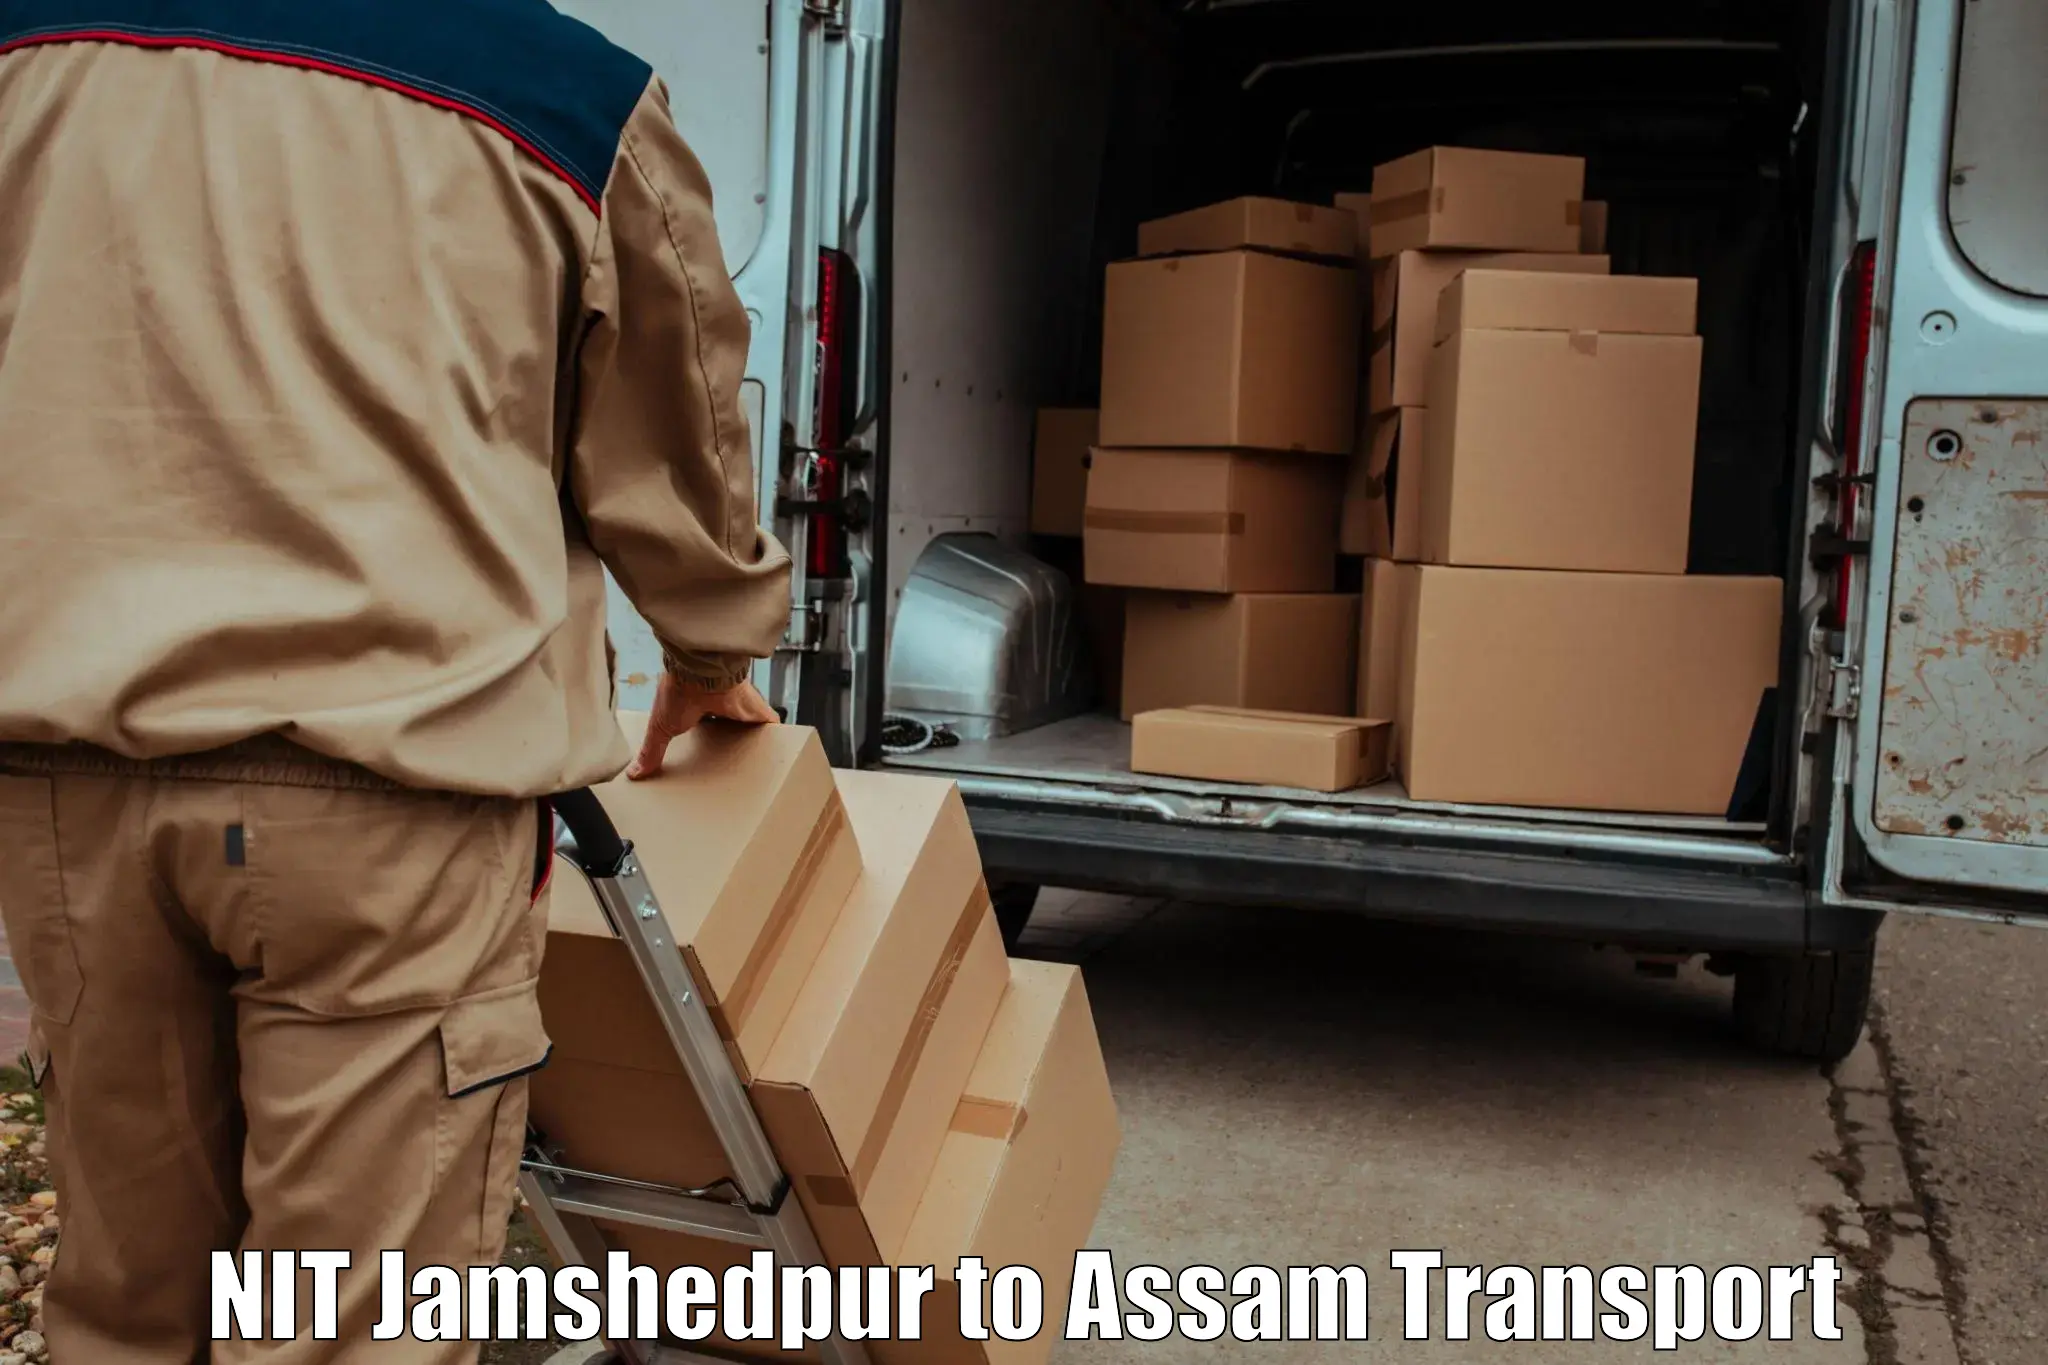 Transportation services NIT Jamshedpur to Assam